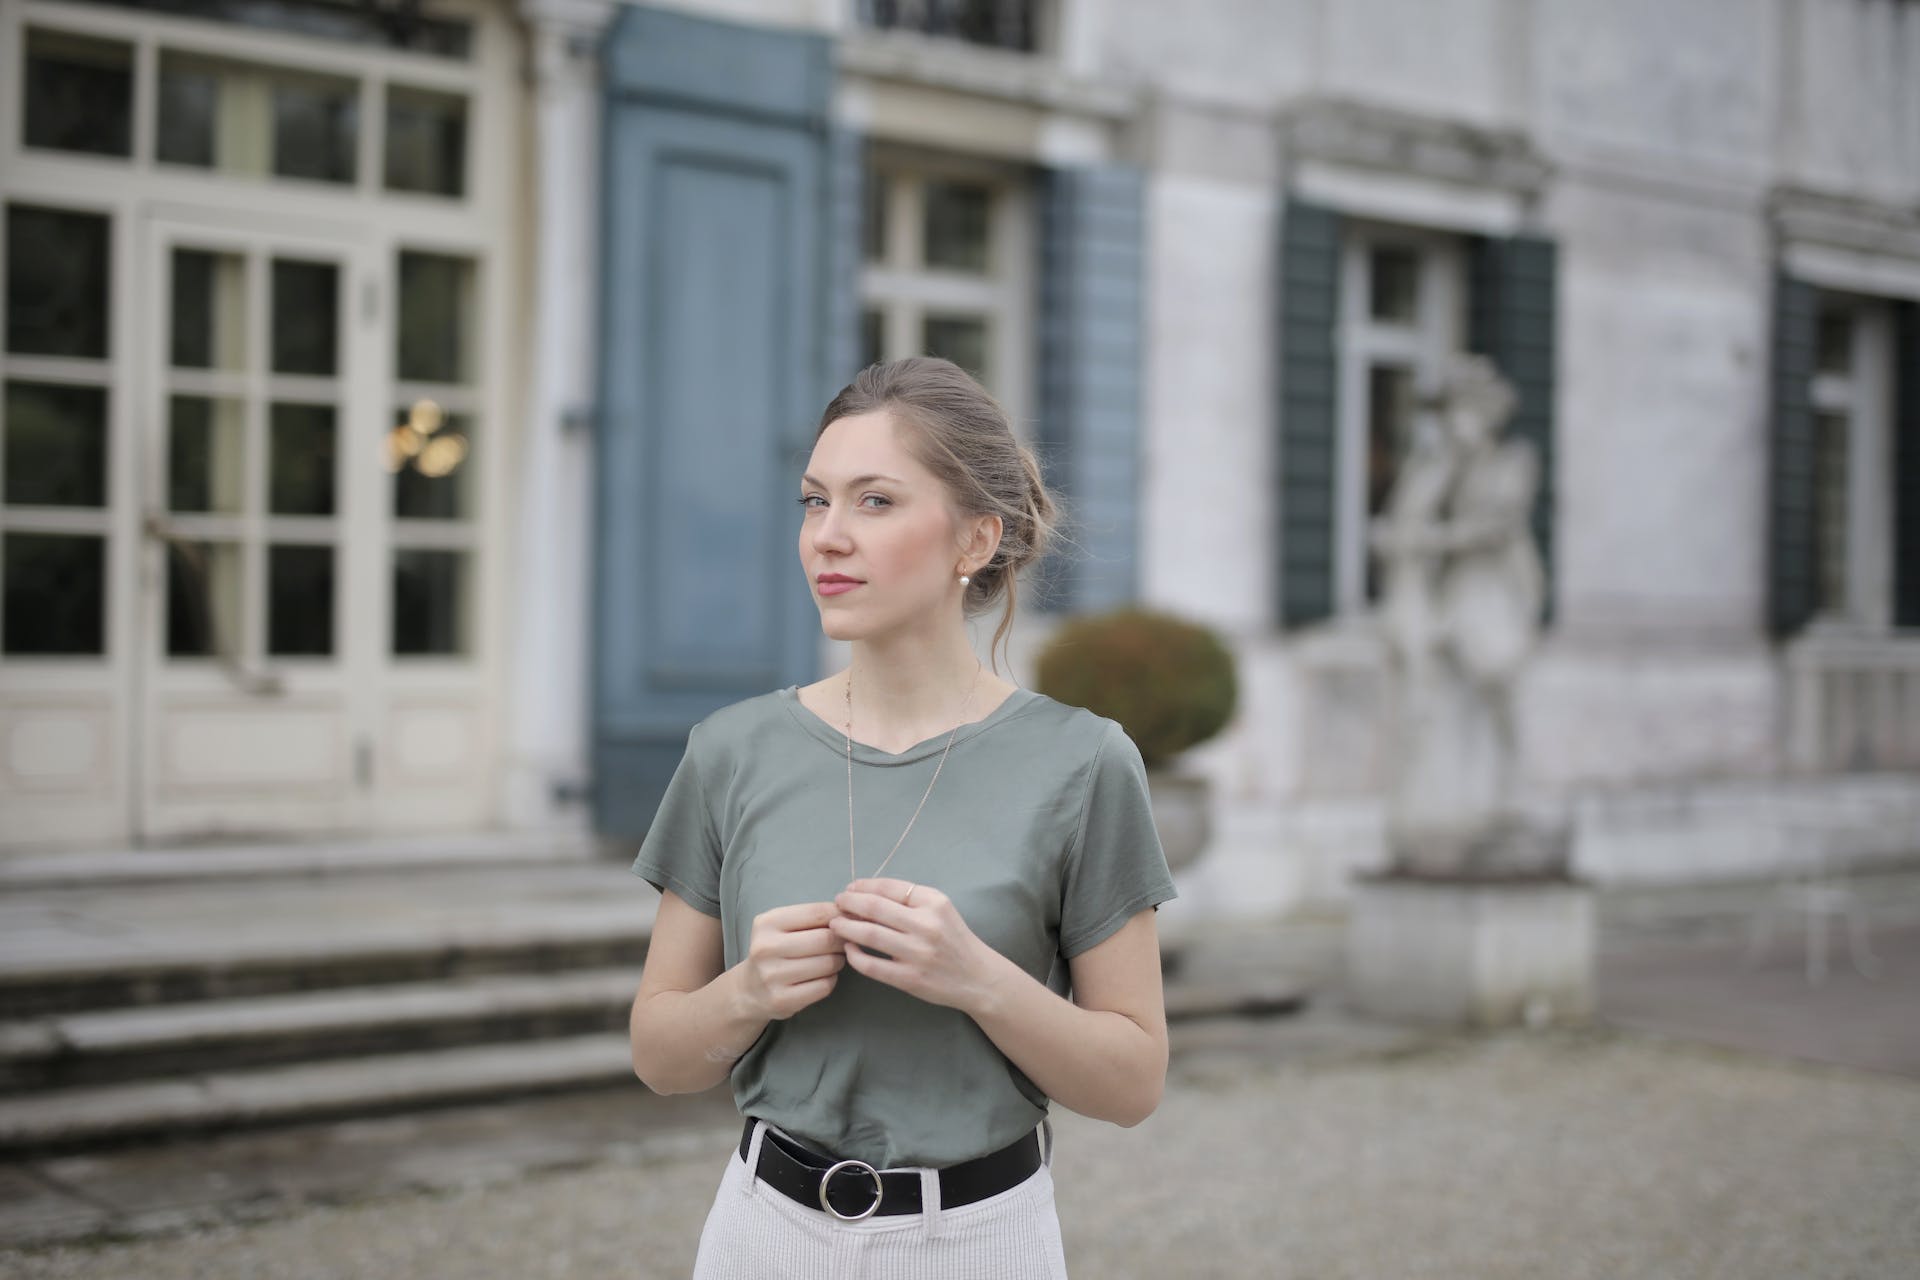 Une jeune femme portant une chemise grise se tenant à l'extérieur | Source : Pexels